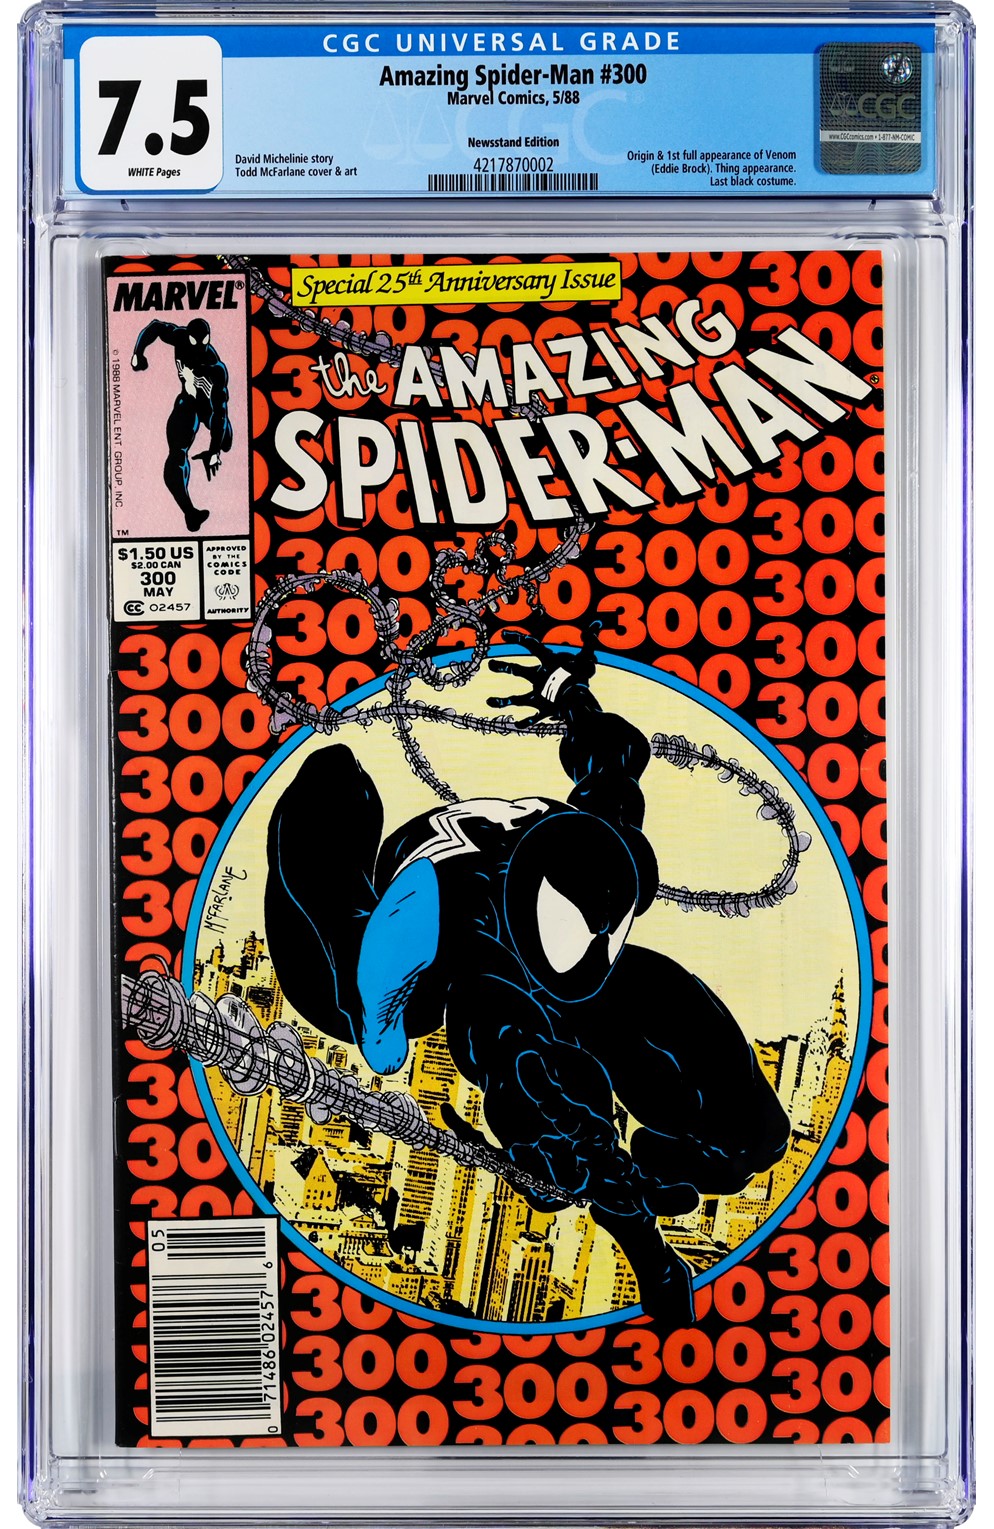 Amazing Spider-Man #300 Cgc 7.5 Newsstand Edition